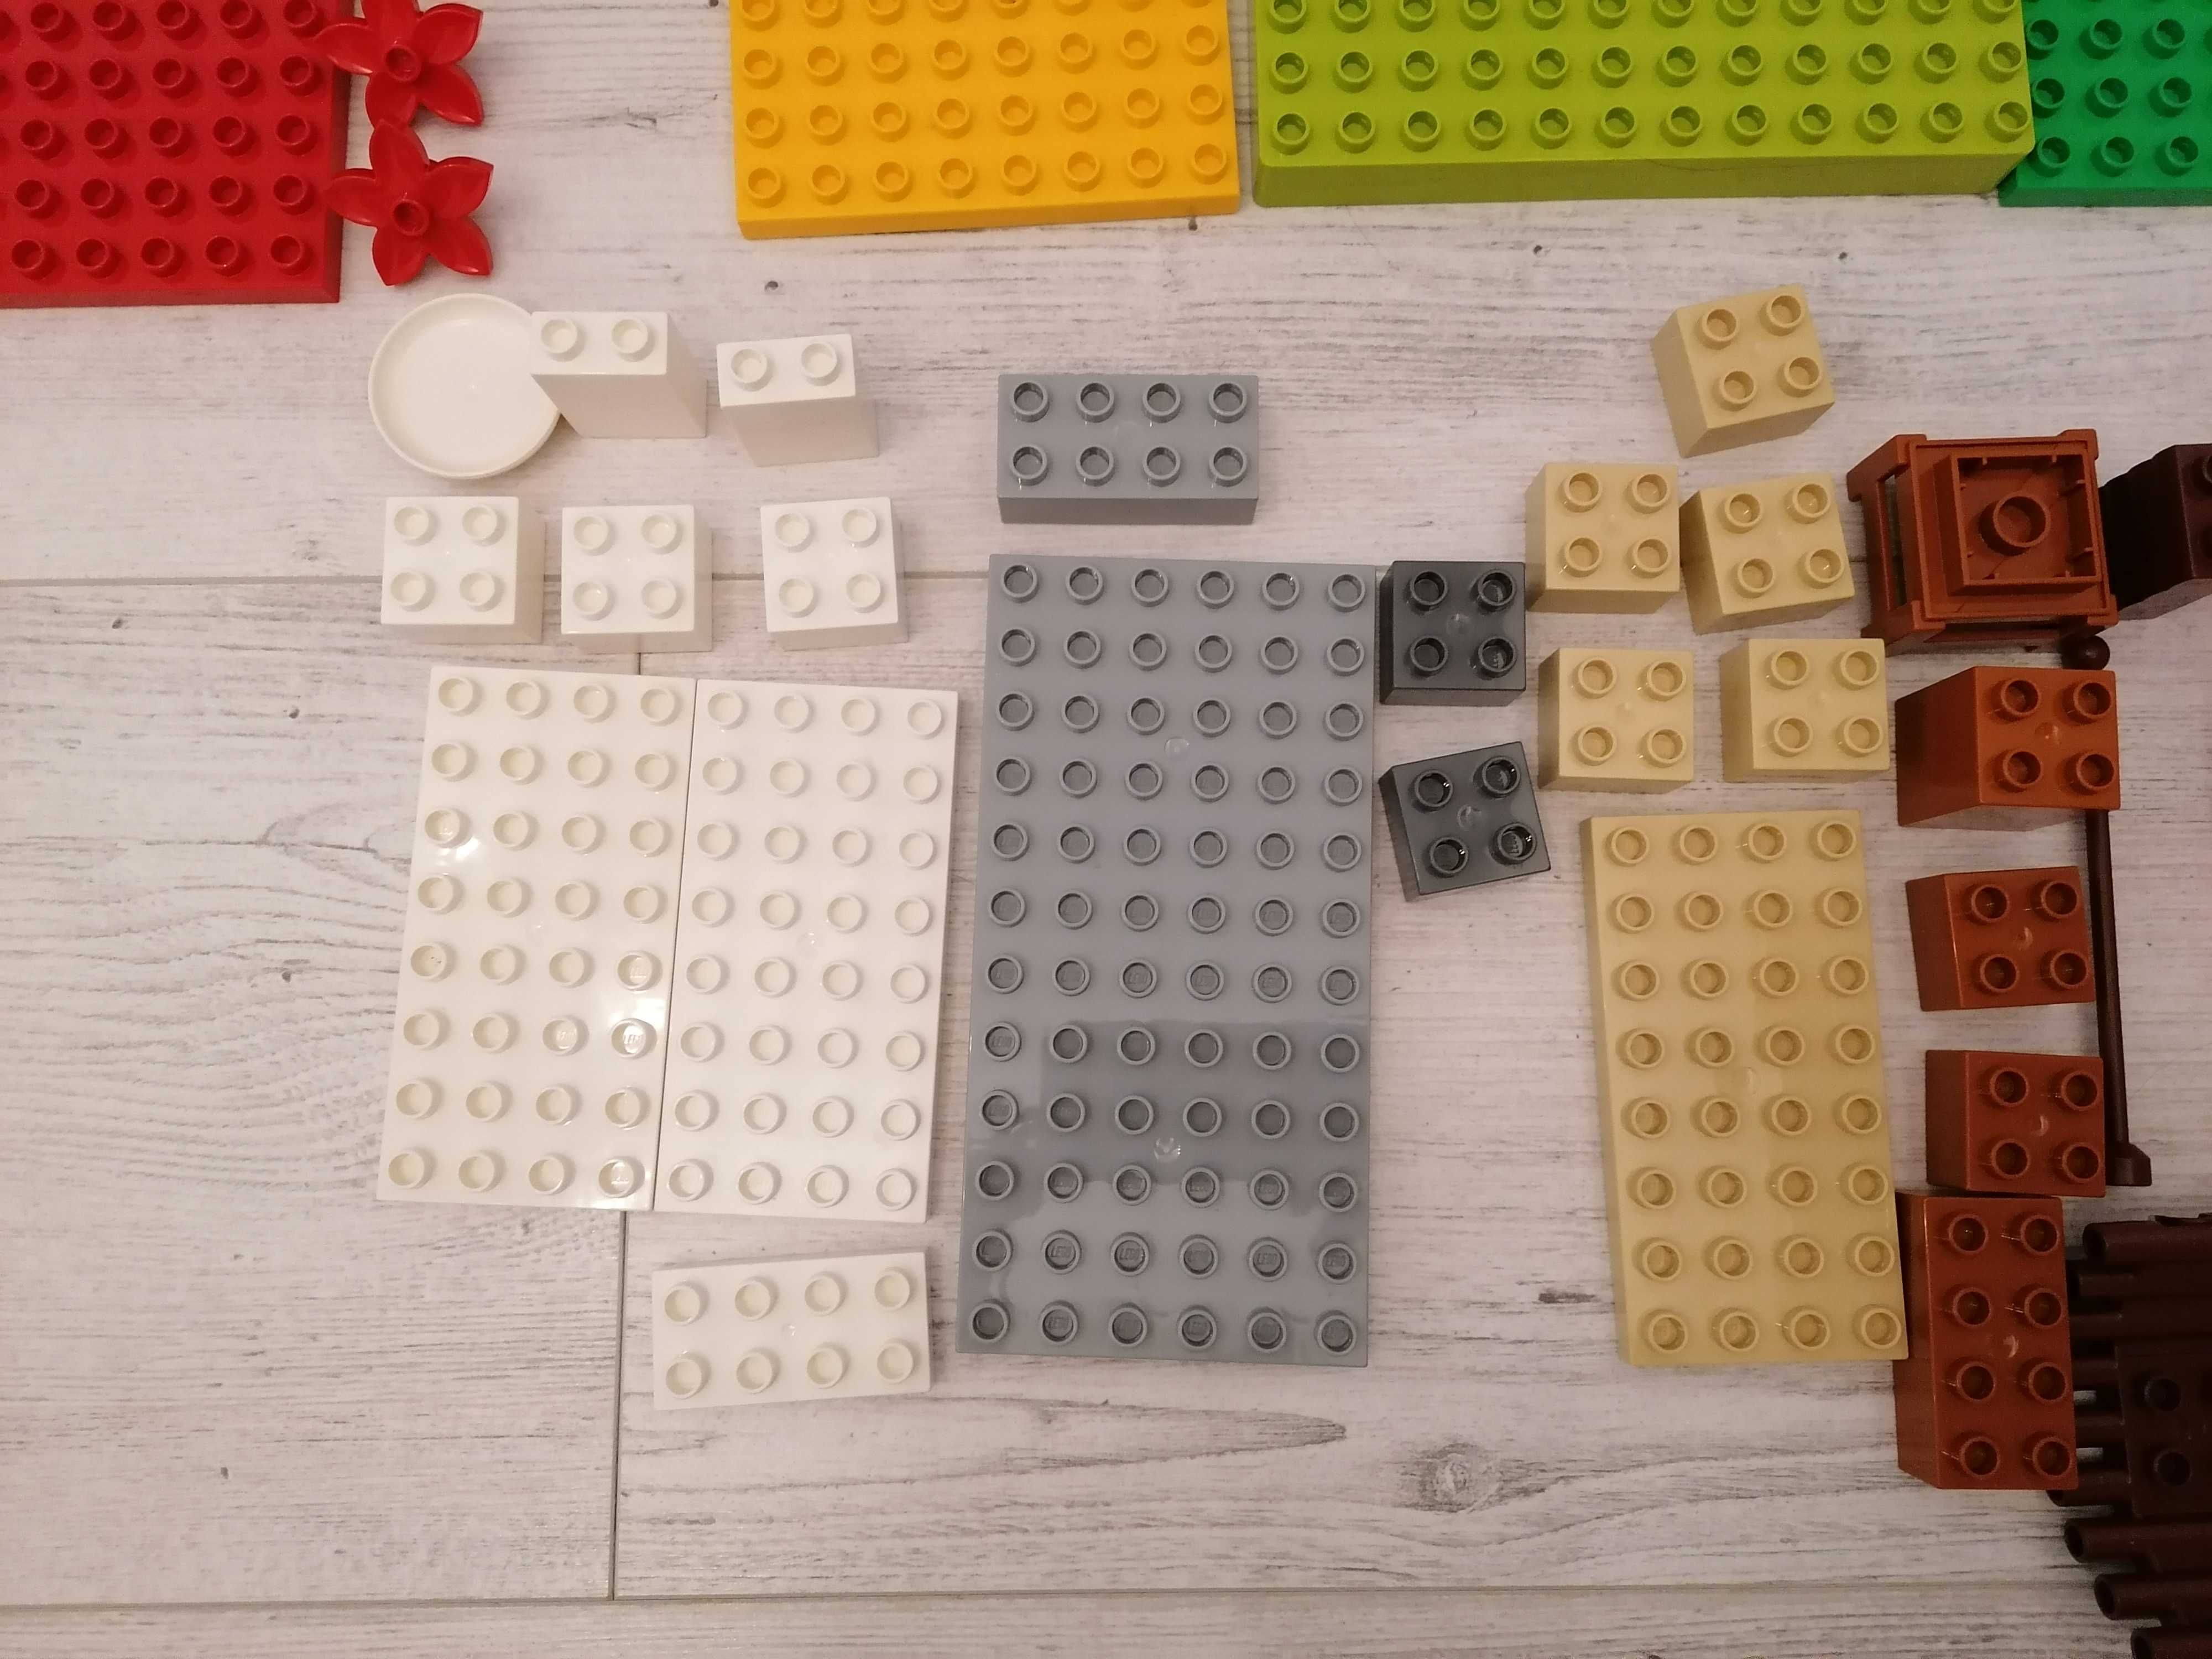 Set planse si piese LEGO DUPLO